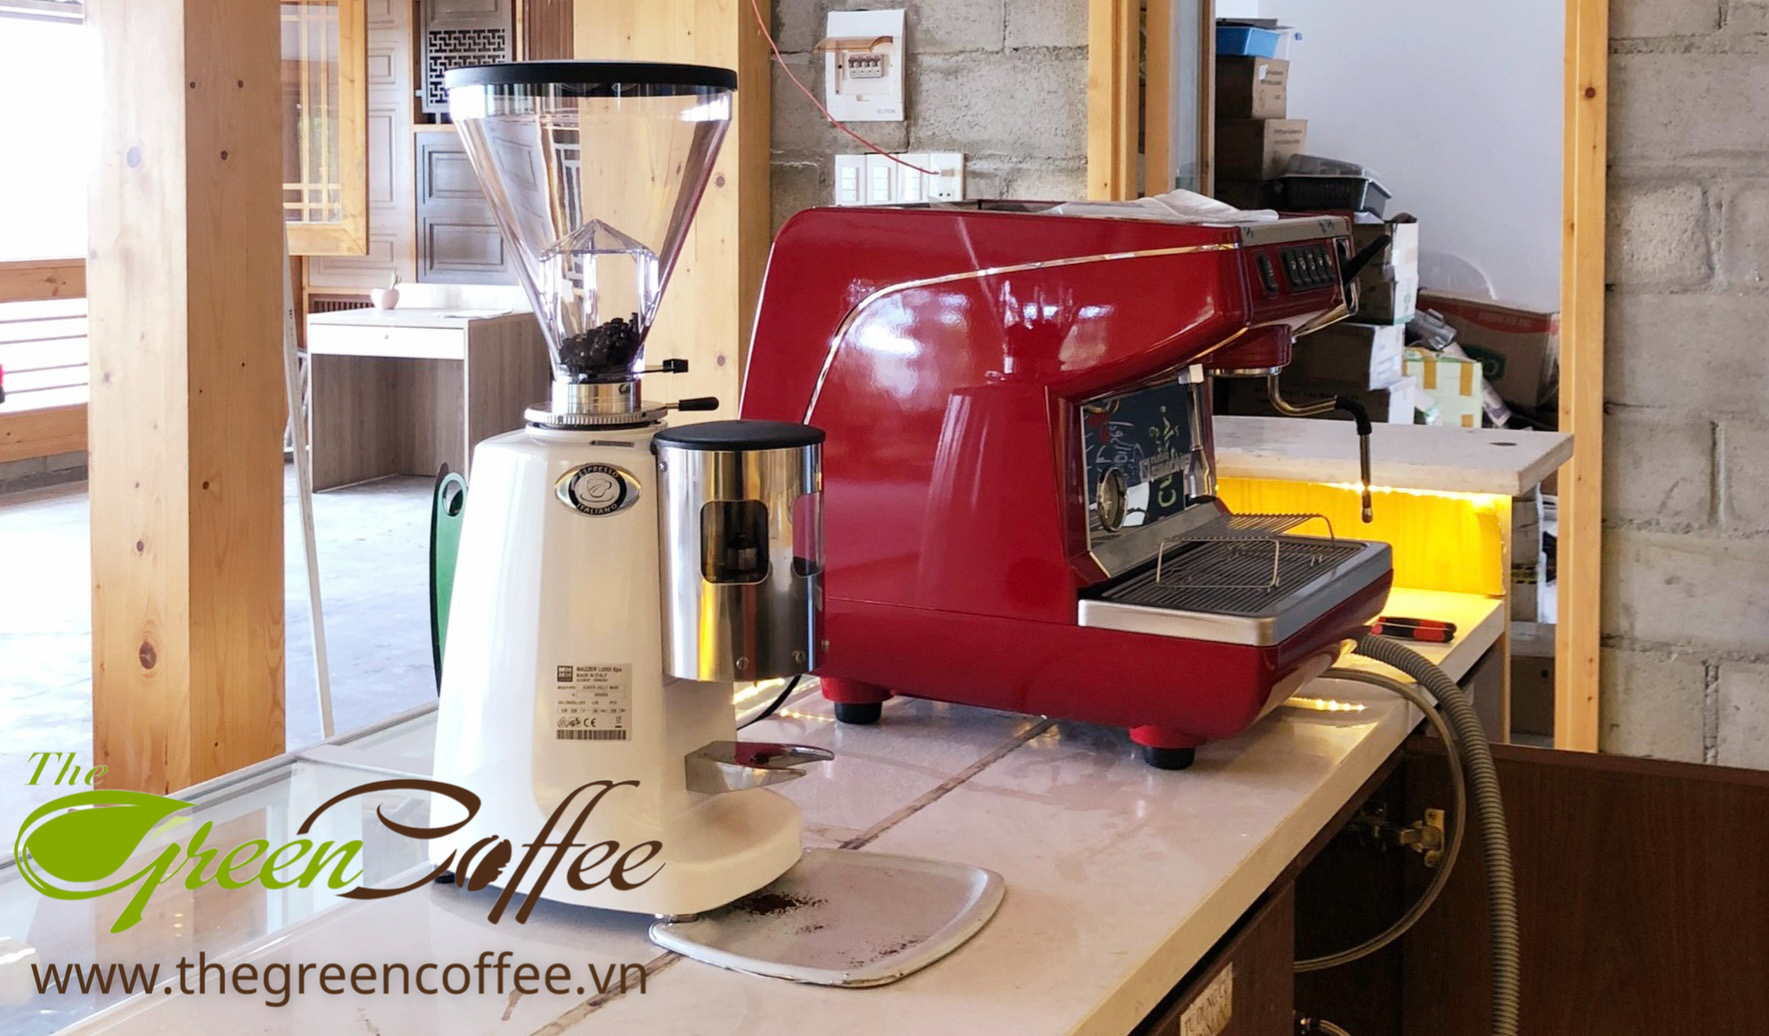 Appia Life - Một chiếc máy pha cà phê bền vững đến từ nhà Nouva Simonelli